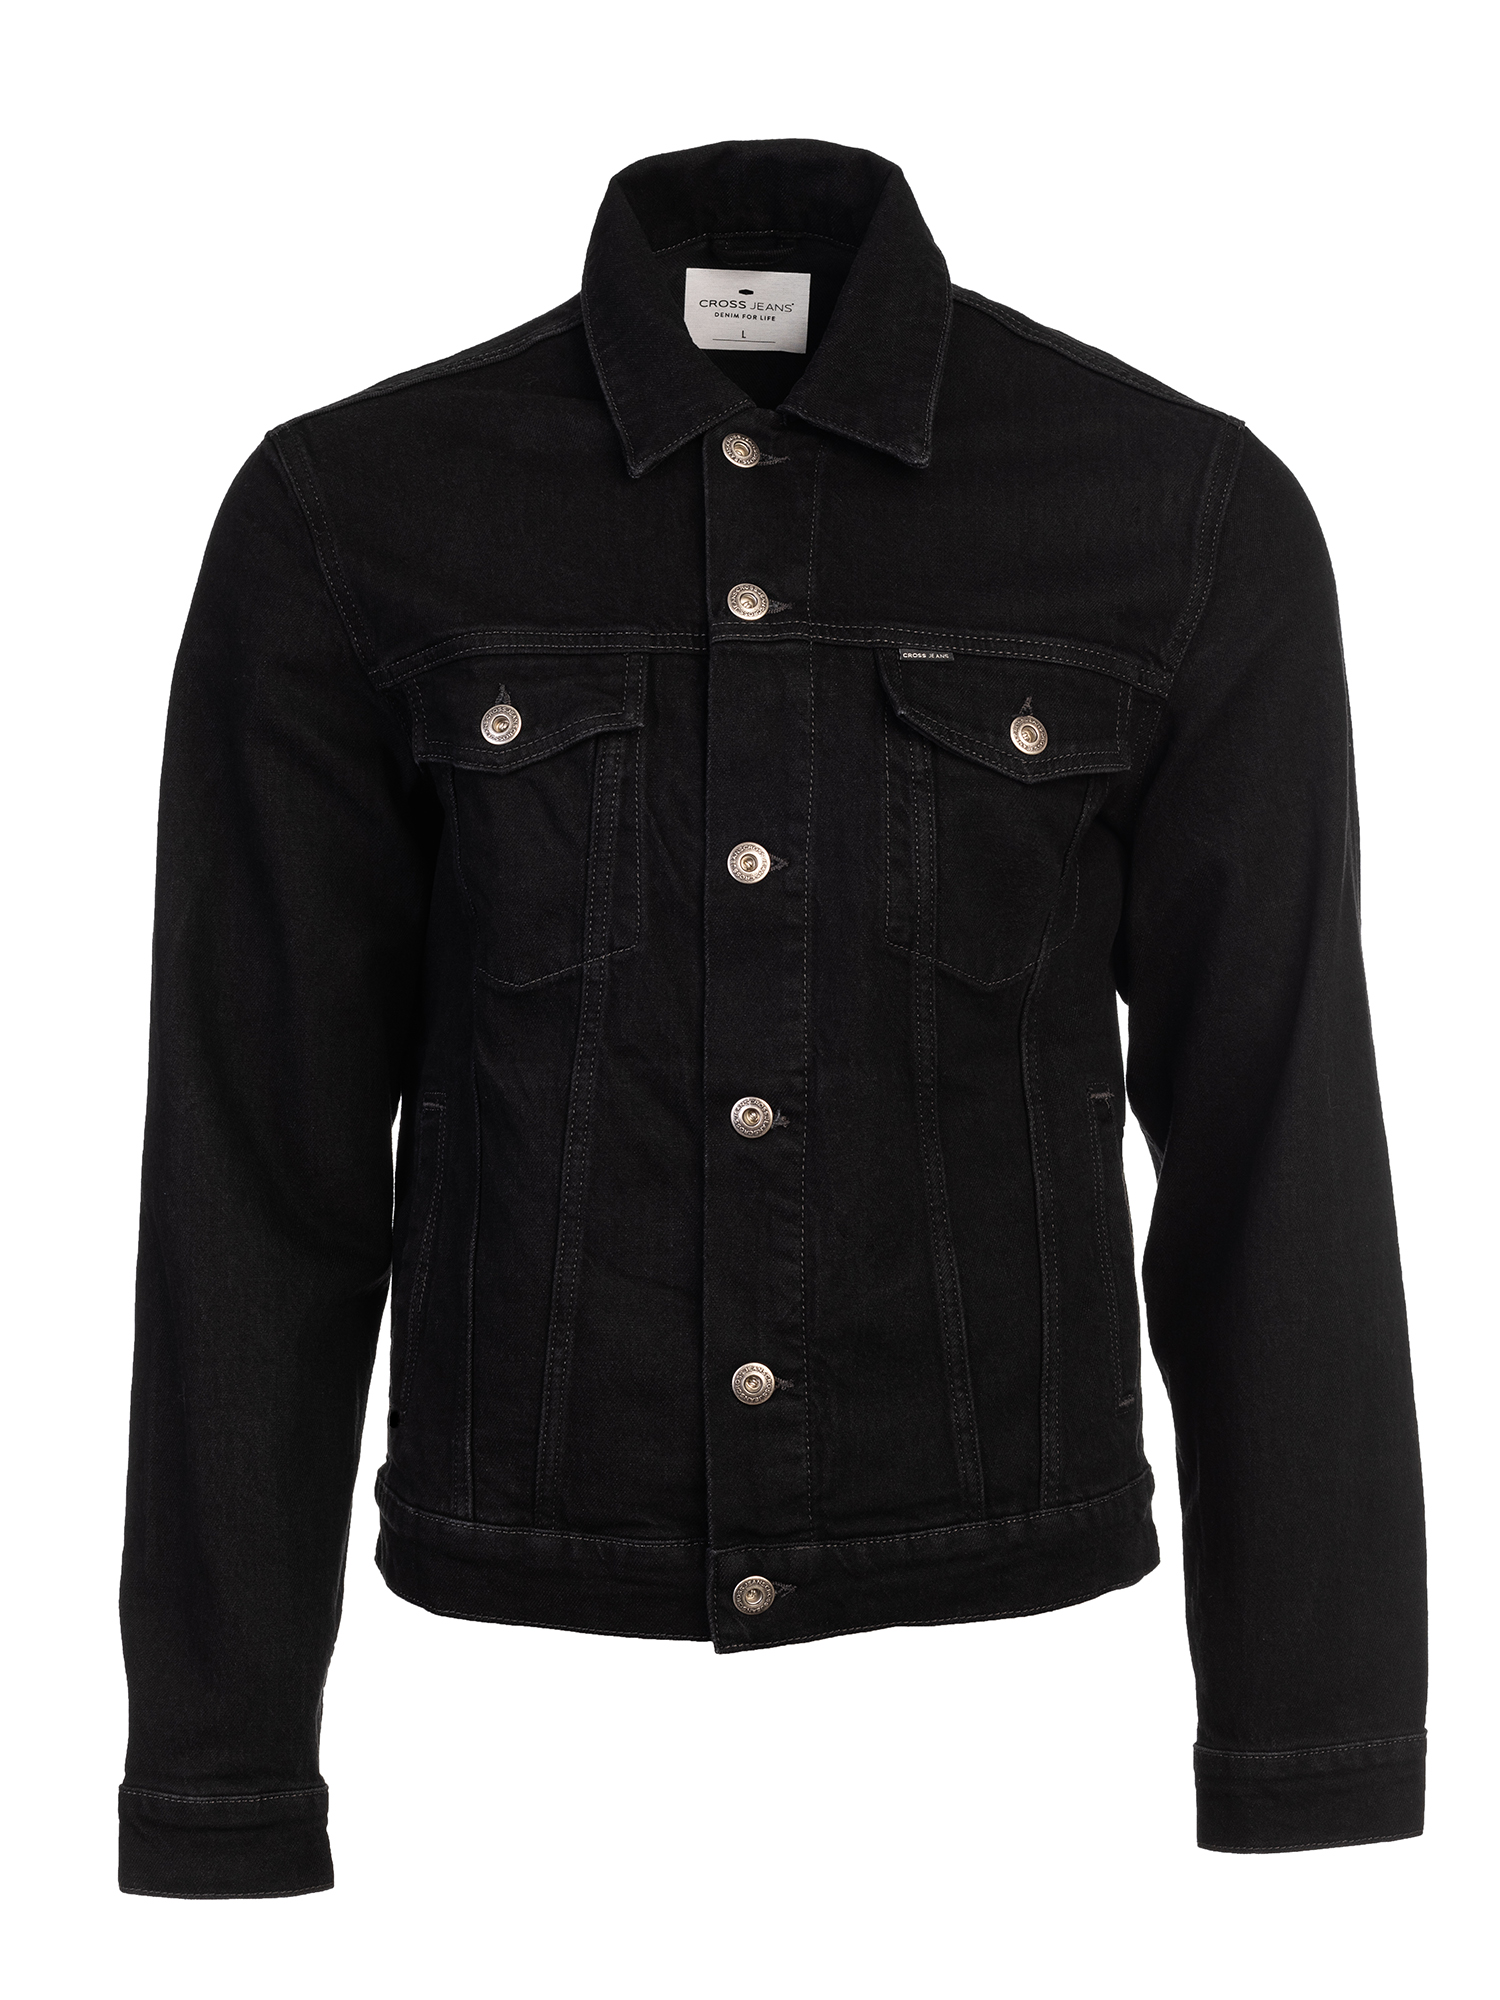 Джинсовая куртка мужская Cross Jeans A 315-056 черная 3XL